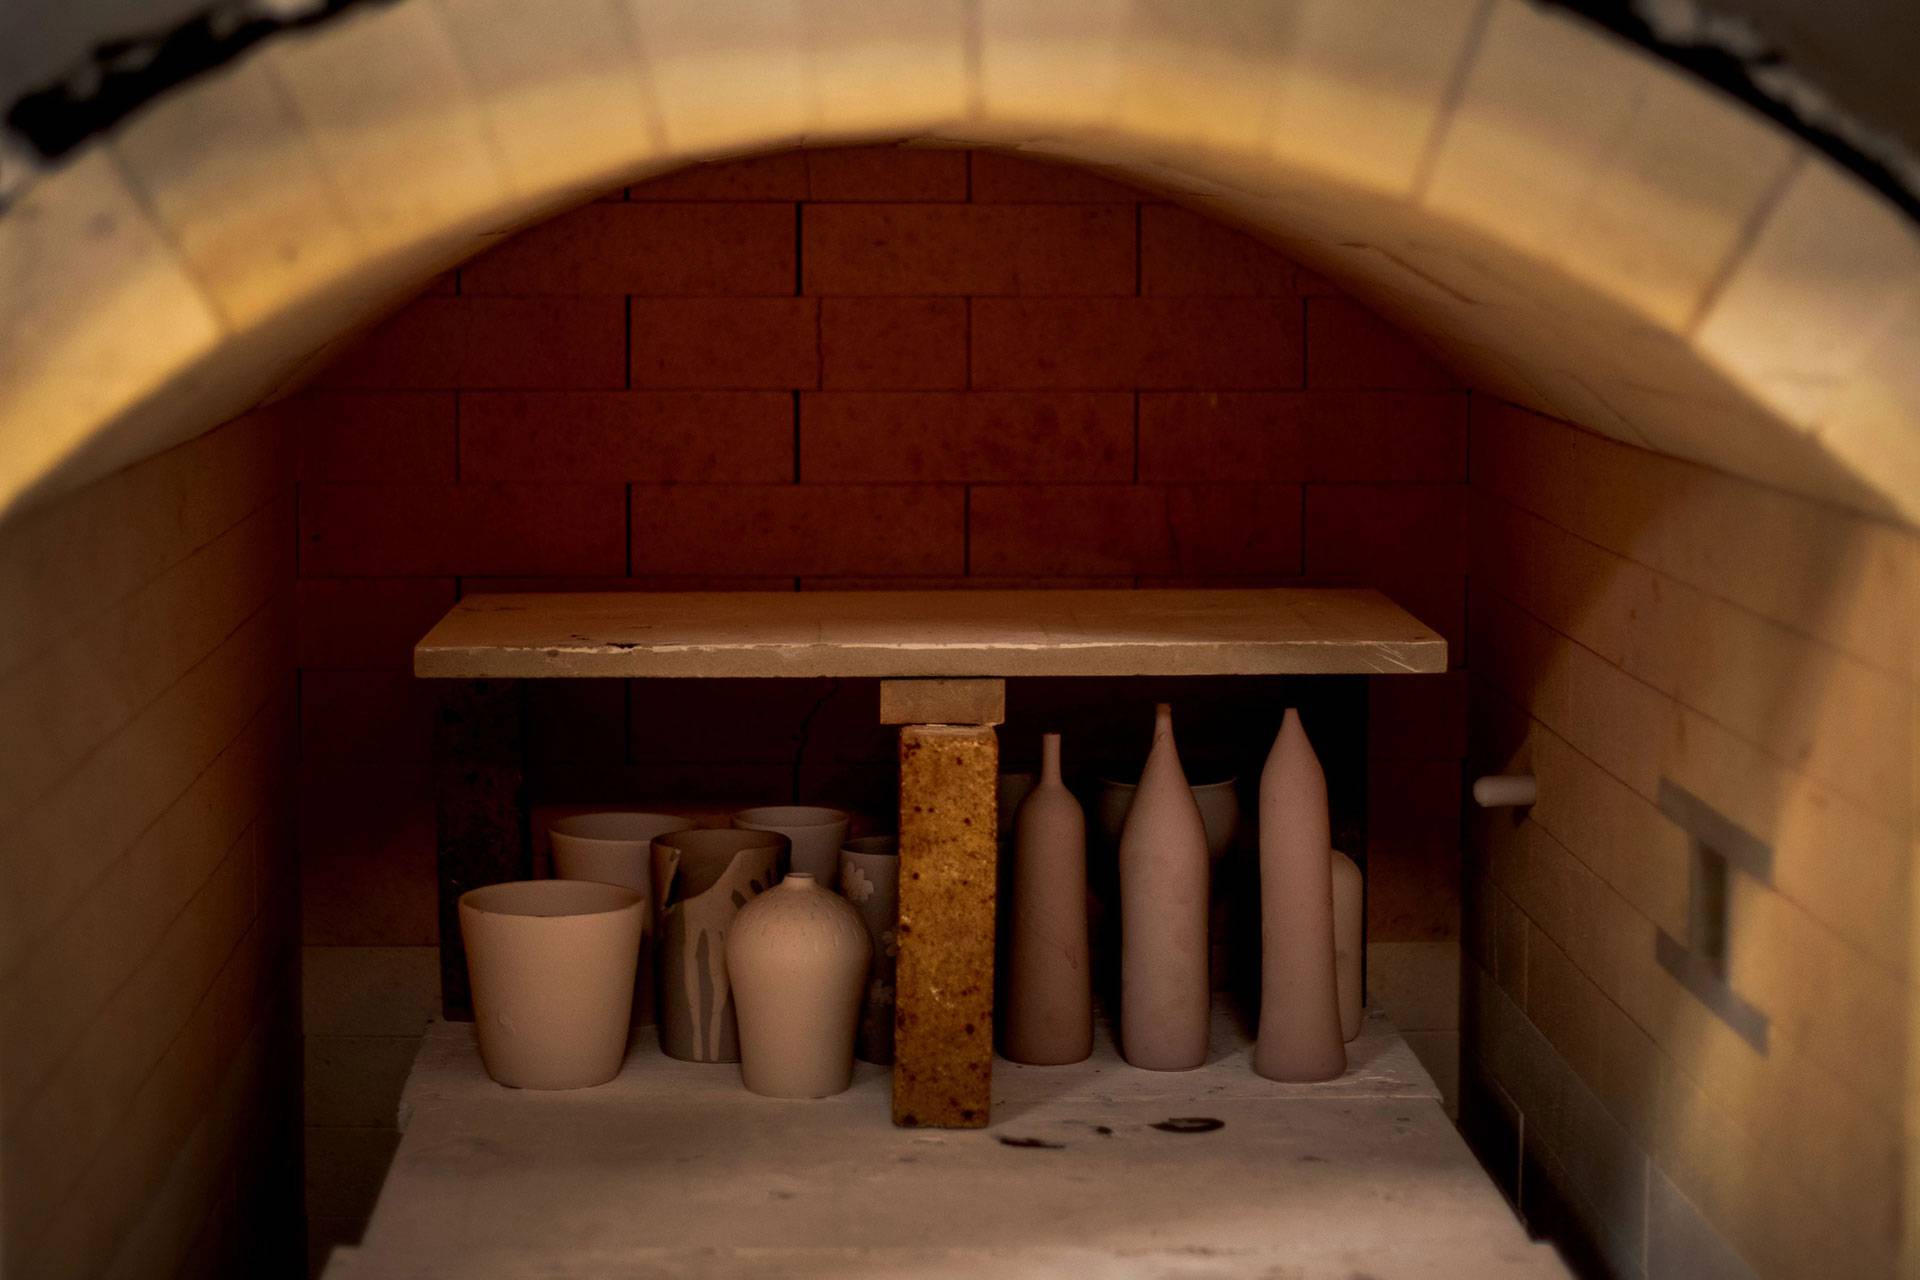 Ceramics Work in the Kiln